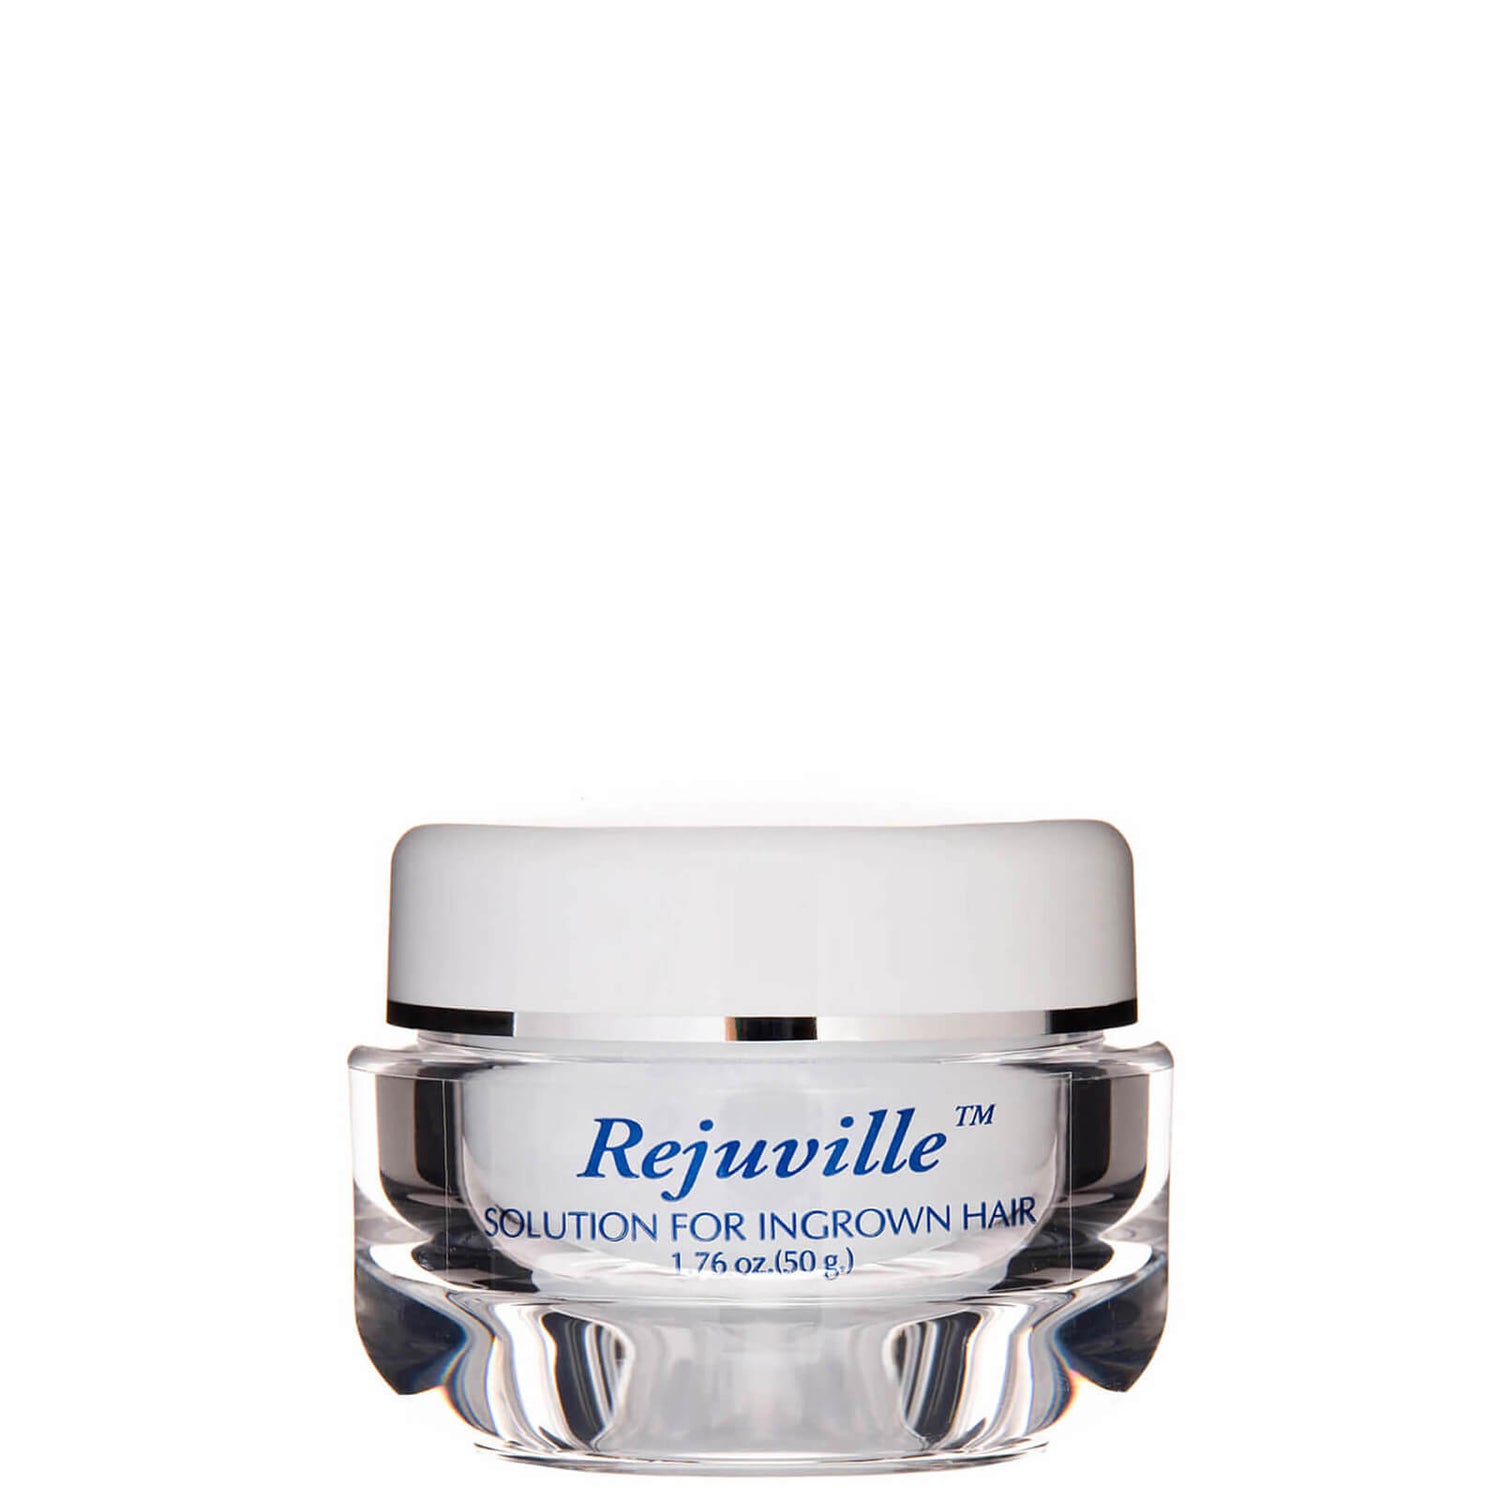 Rejuvi Rejuville Solution for Ingrown Hair (1.76 oz.)